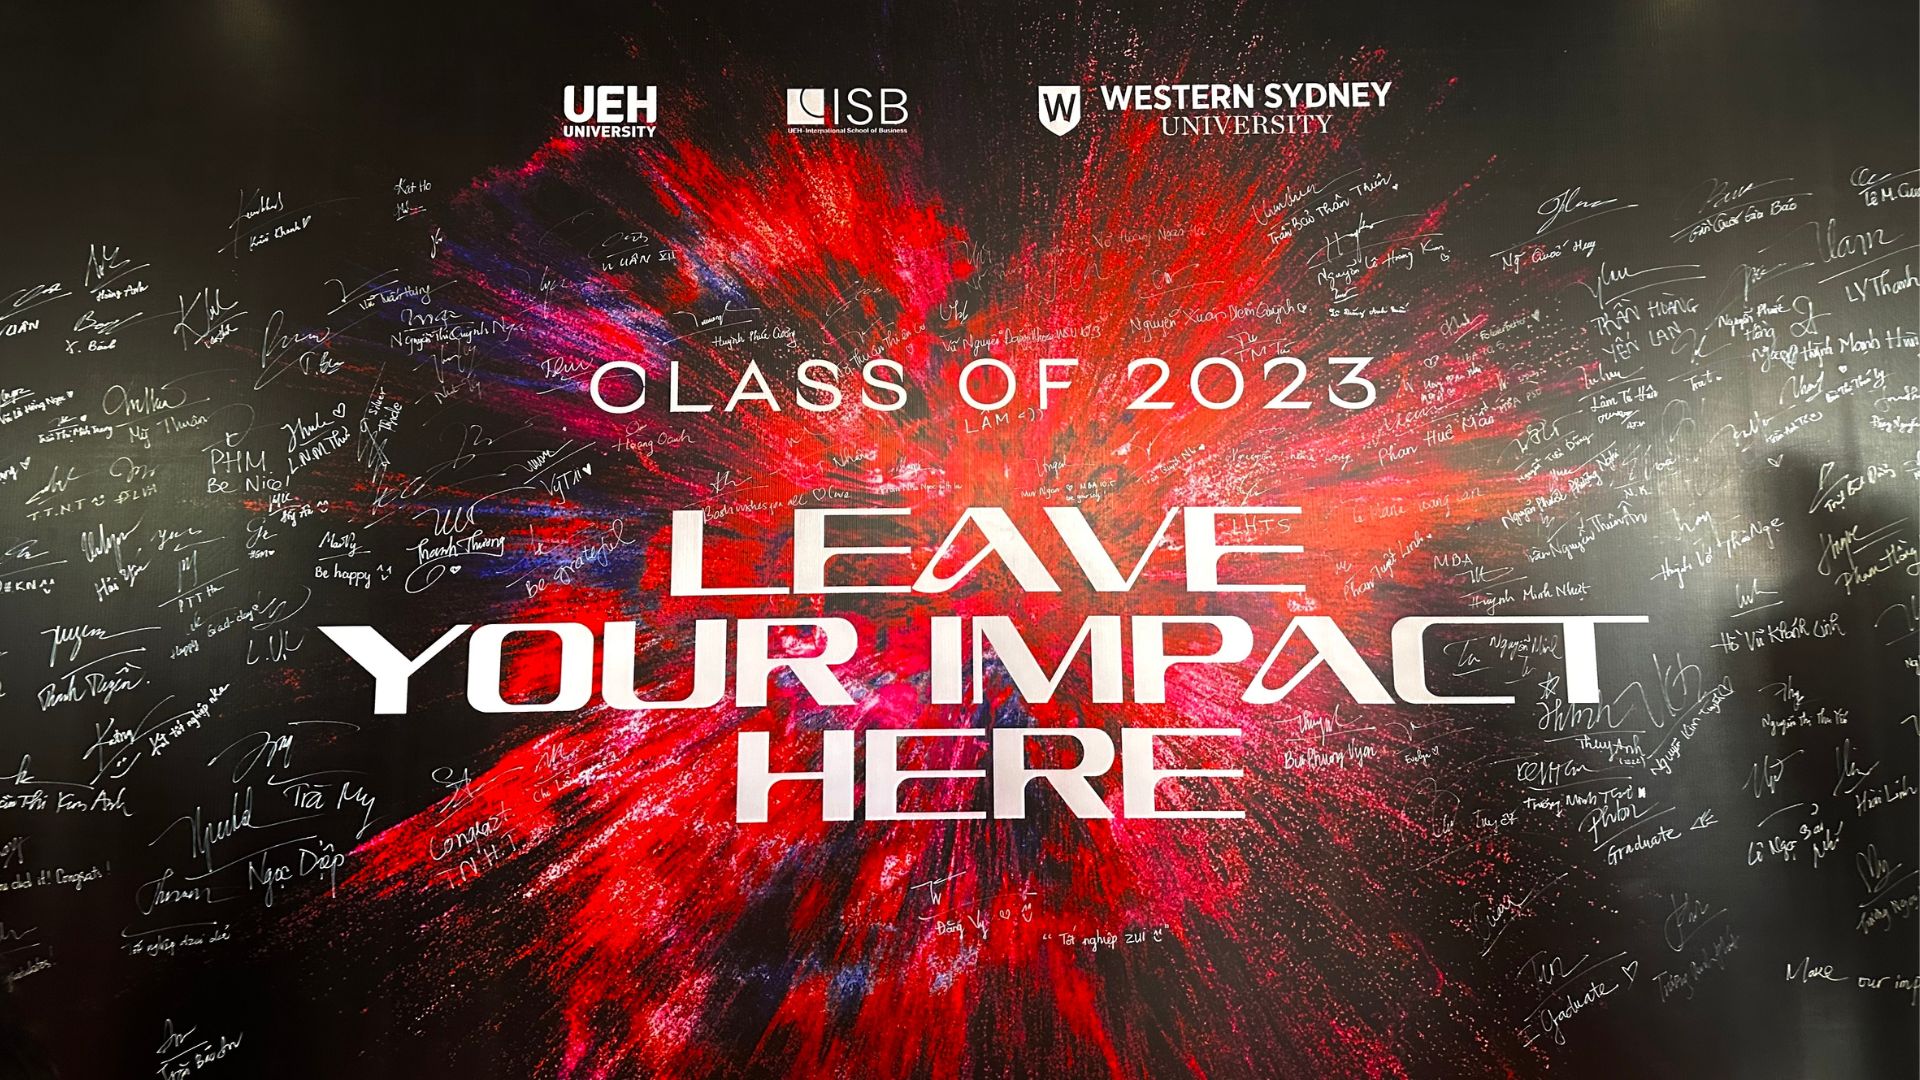 Lễ Tốt nghiệp Đại học Western Sydney 2023 – Đánh dấu sự trưởng thành và tầm ảnh hưởng